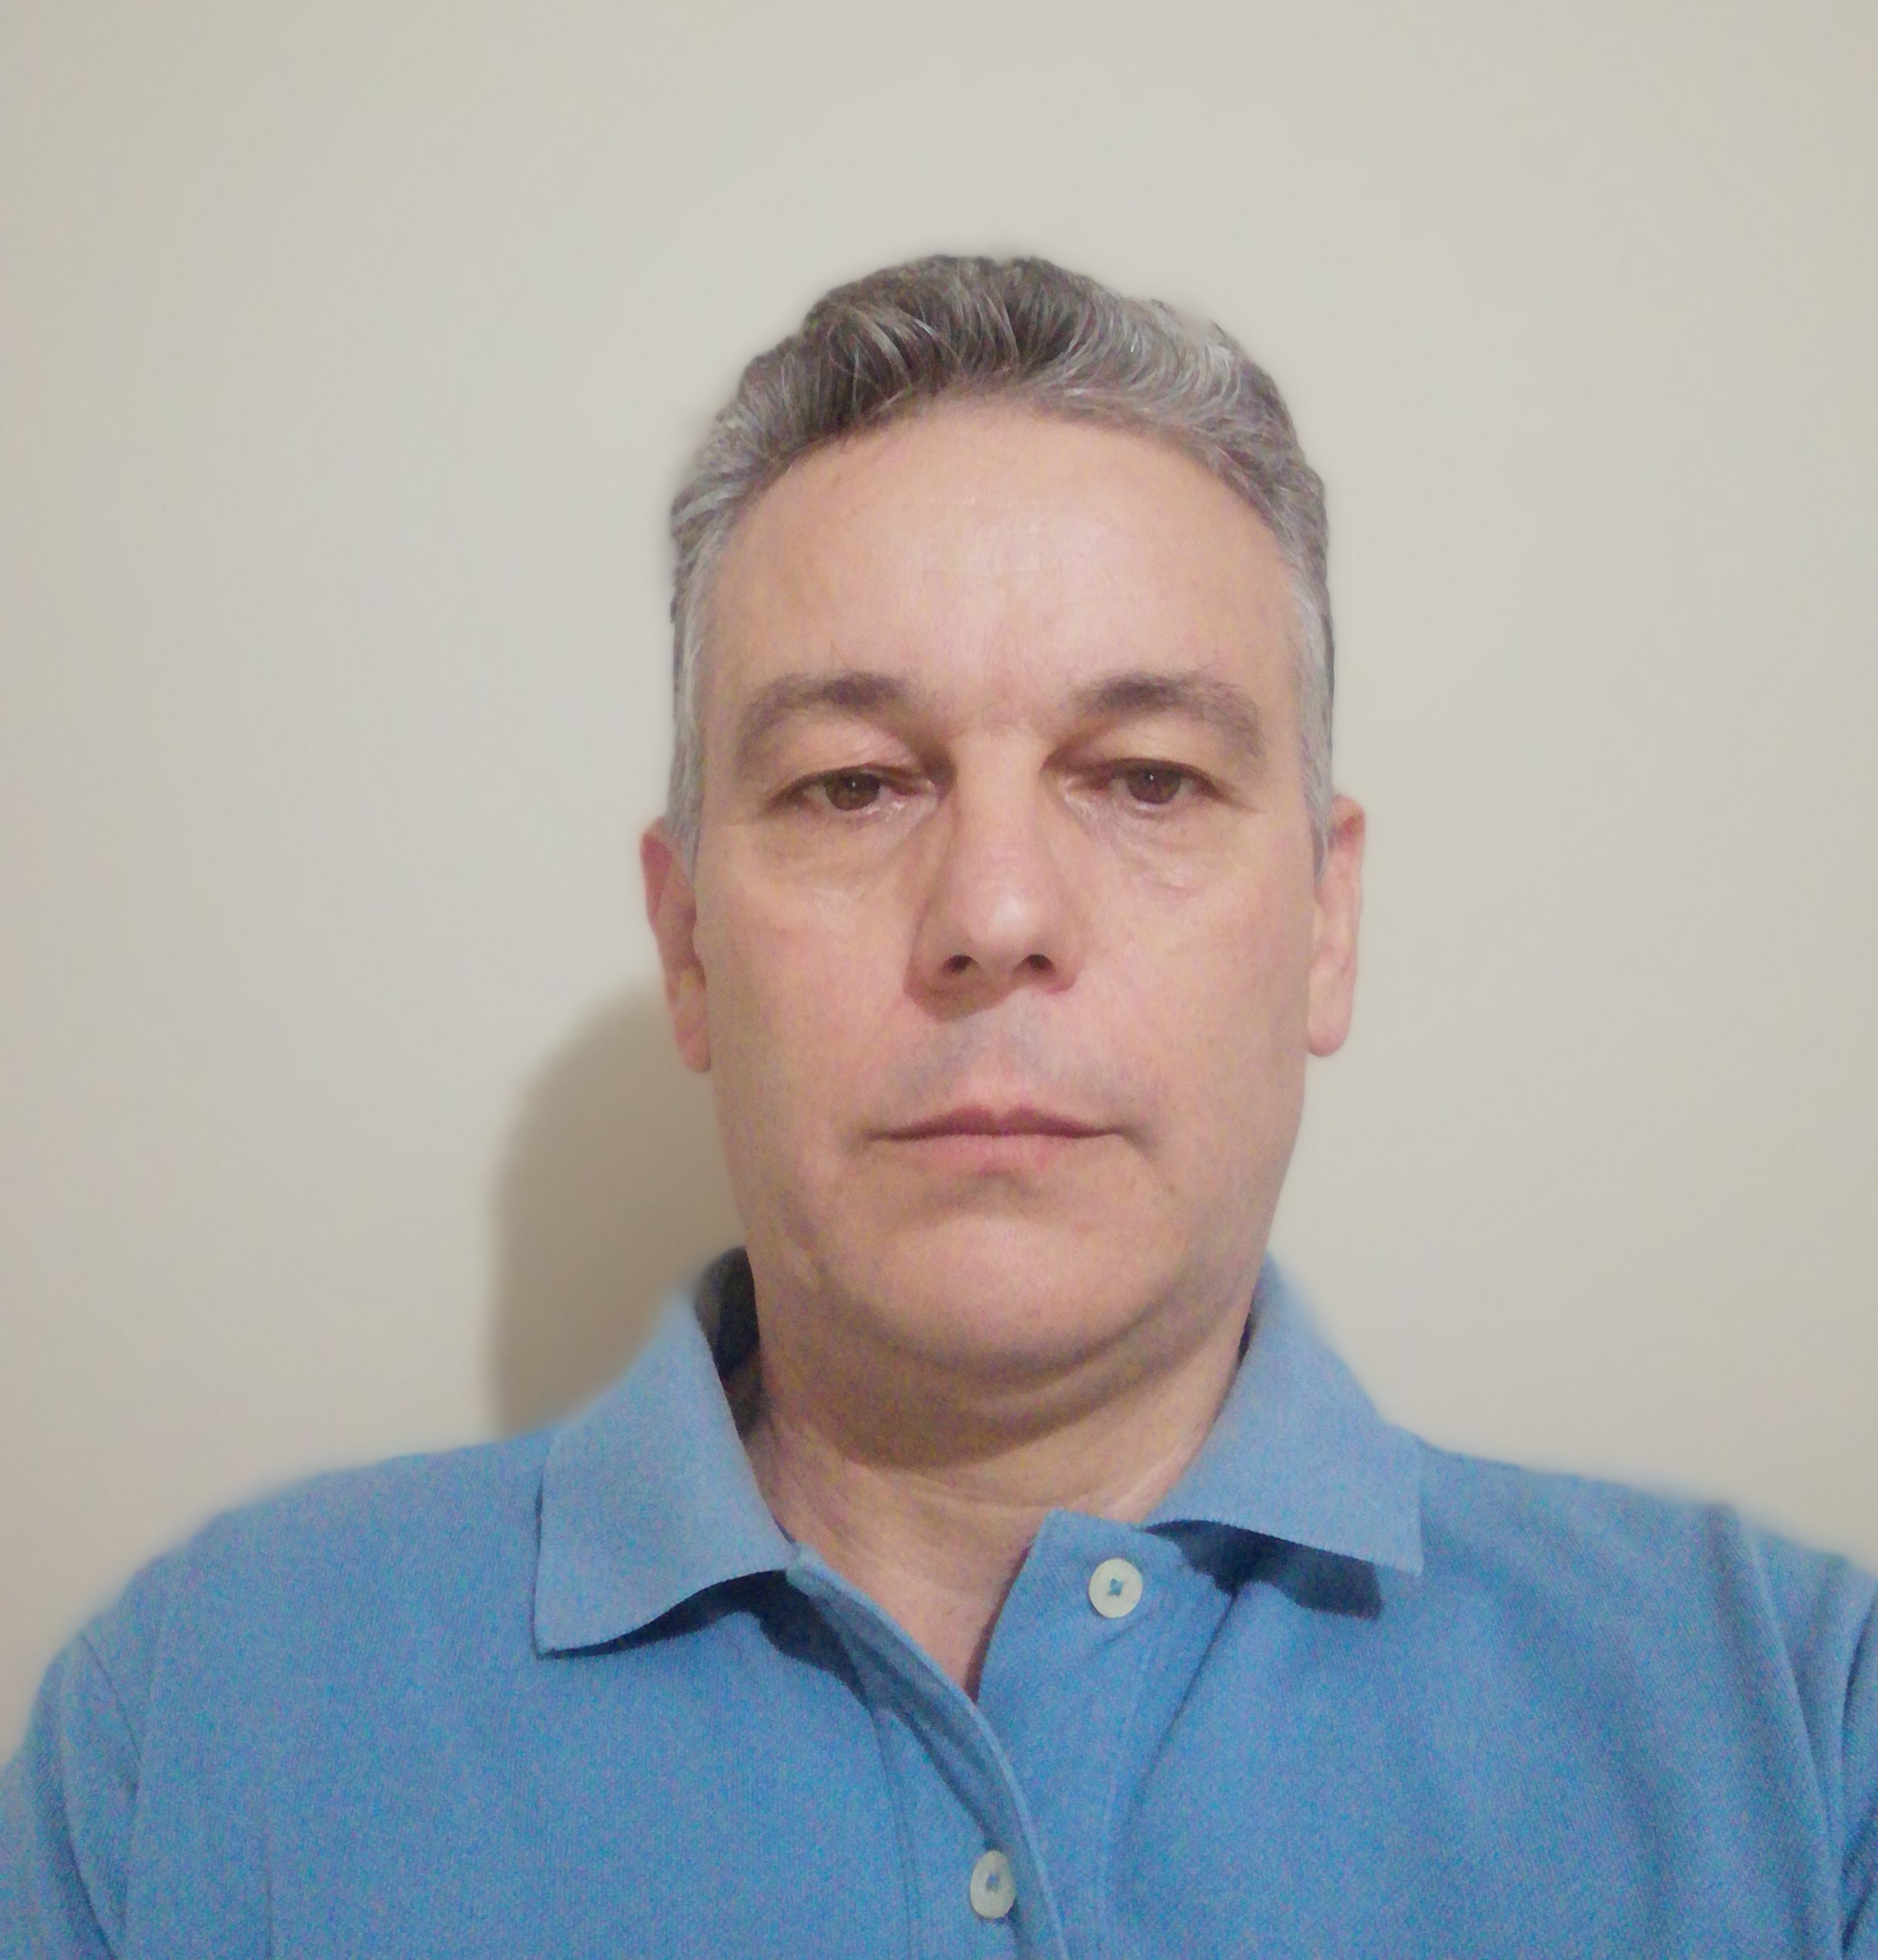 Δημήτρης Καλαβρουζιώτης: «Η υπεράσπιση των δικαιωμάτων της κοινωνίας για ασφάλεια, δημοκρατία και δικαιοσύνη συνεχίζεται»